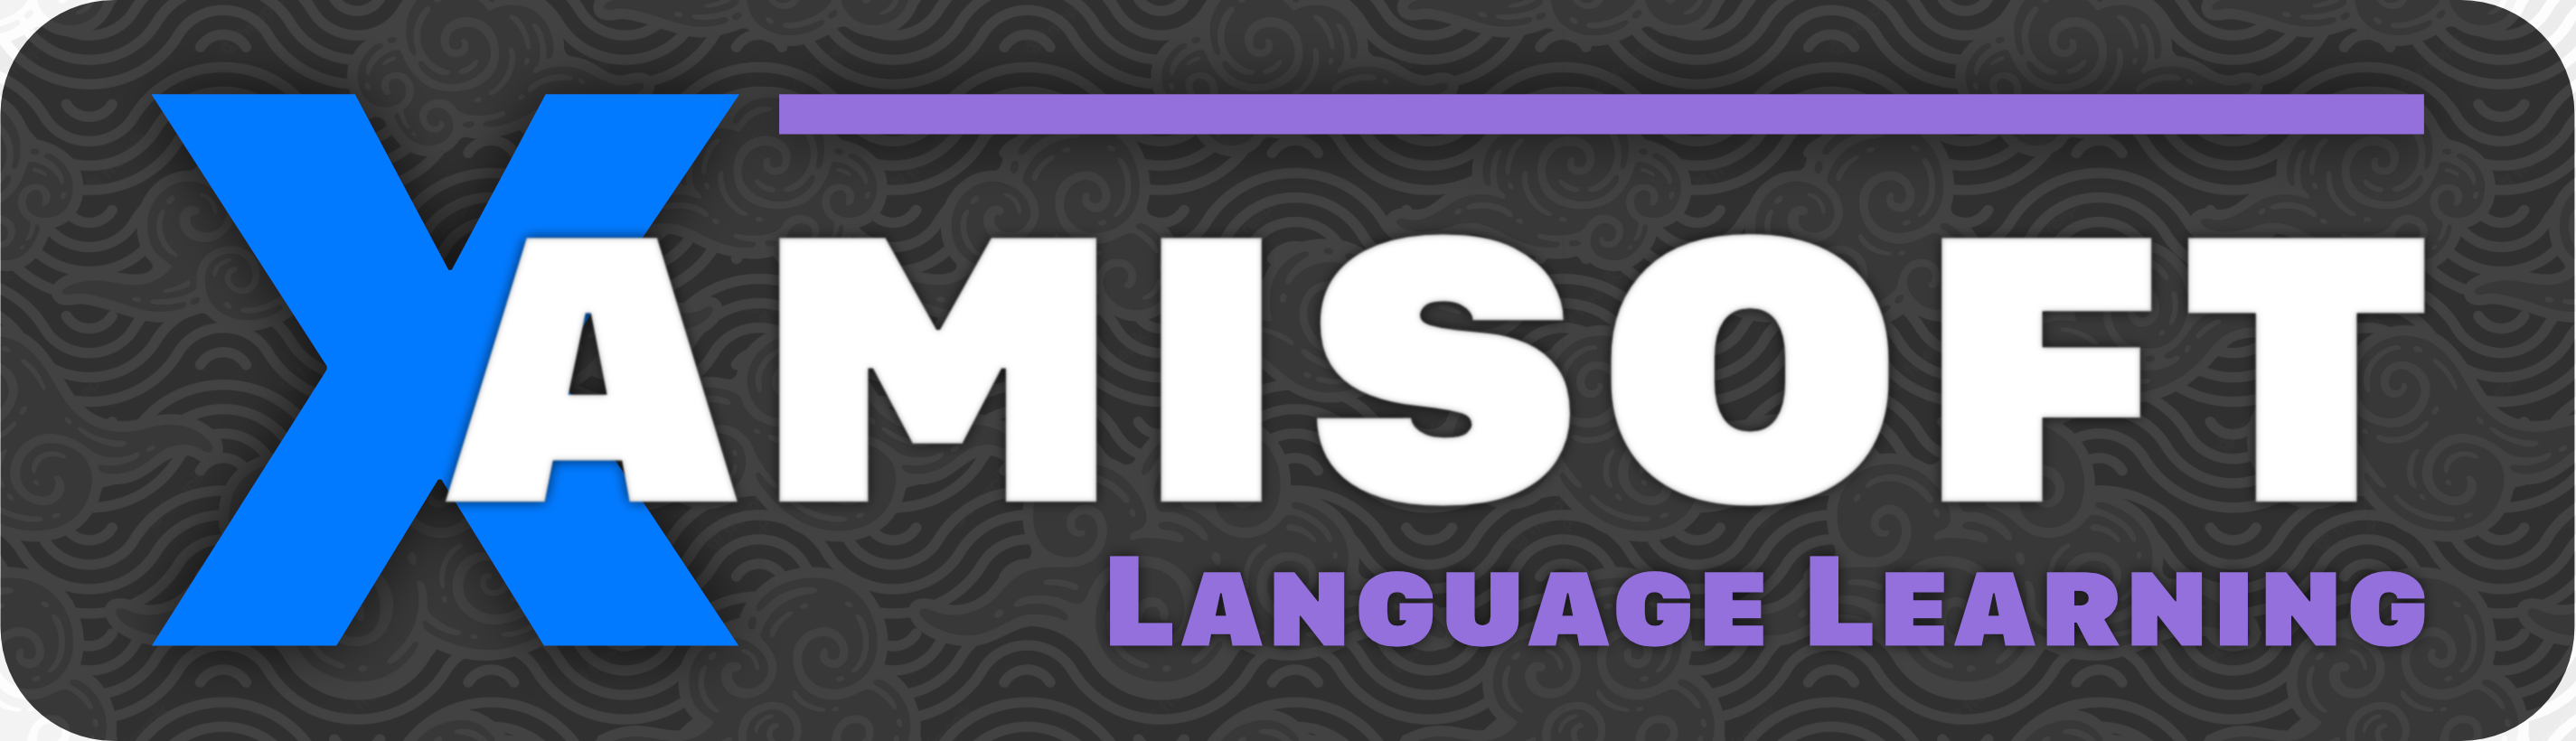 Xamisoft - Création d'apps pour l'apprentissage des langues